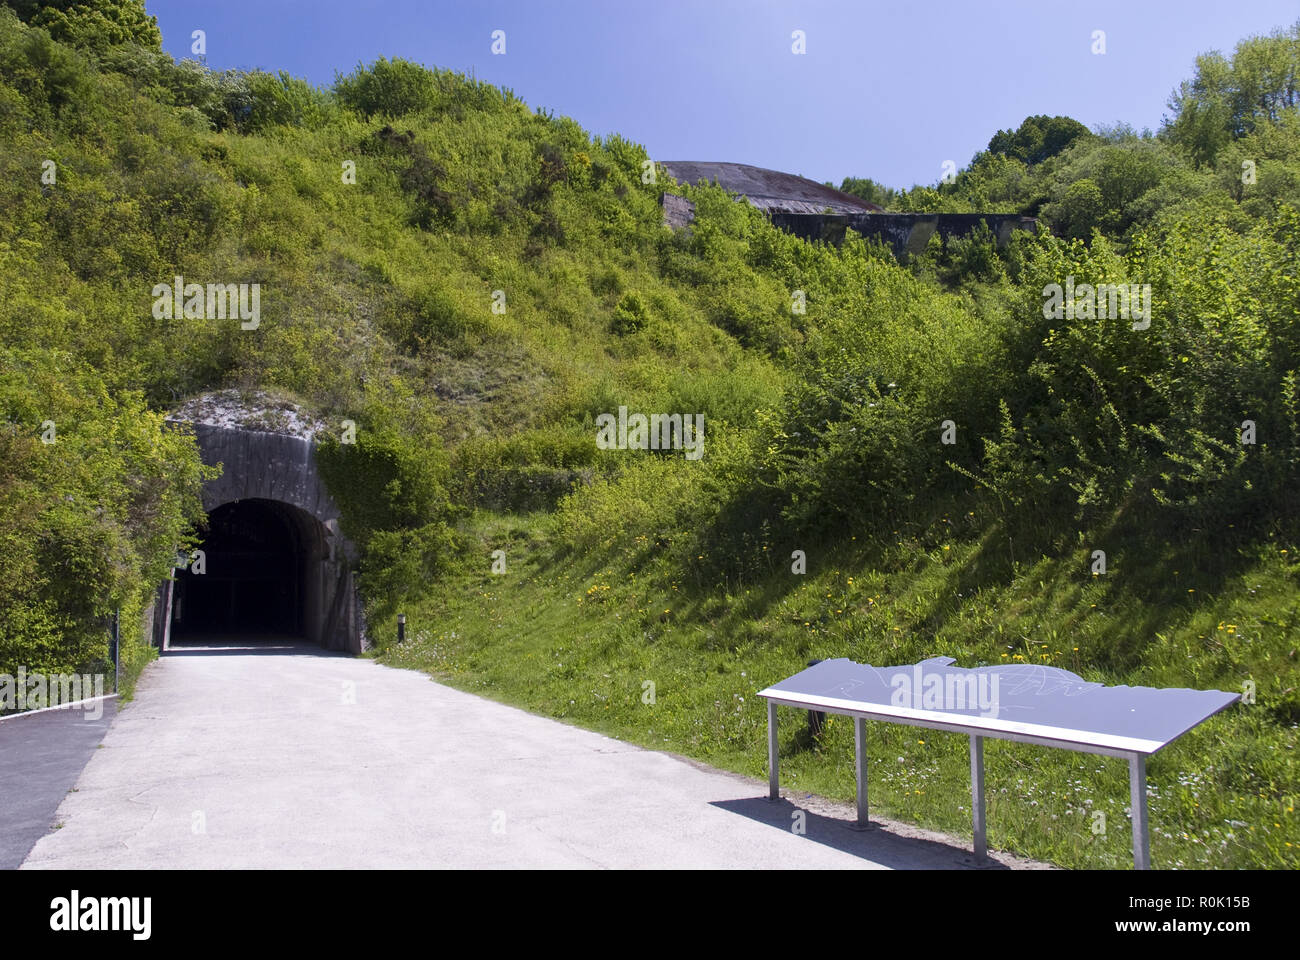 La Coupole o Coupole d'Helfaut-Wizernes, è un tedesco guerra mondiale due bunker sotterraneo per il lancio V-2 razzi, nei pressi di Saint omer, Francia. Foto Stock